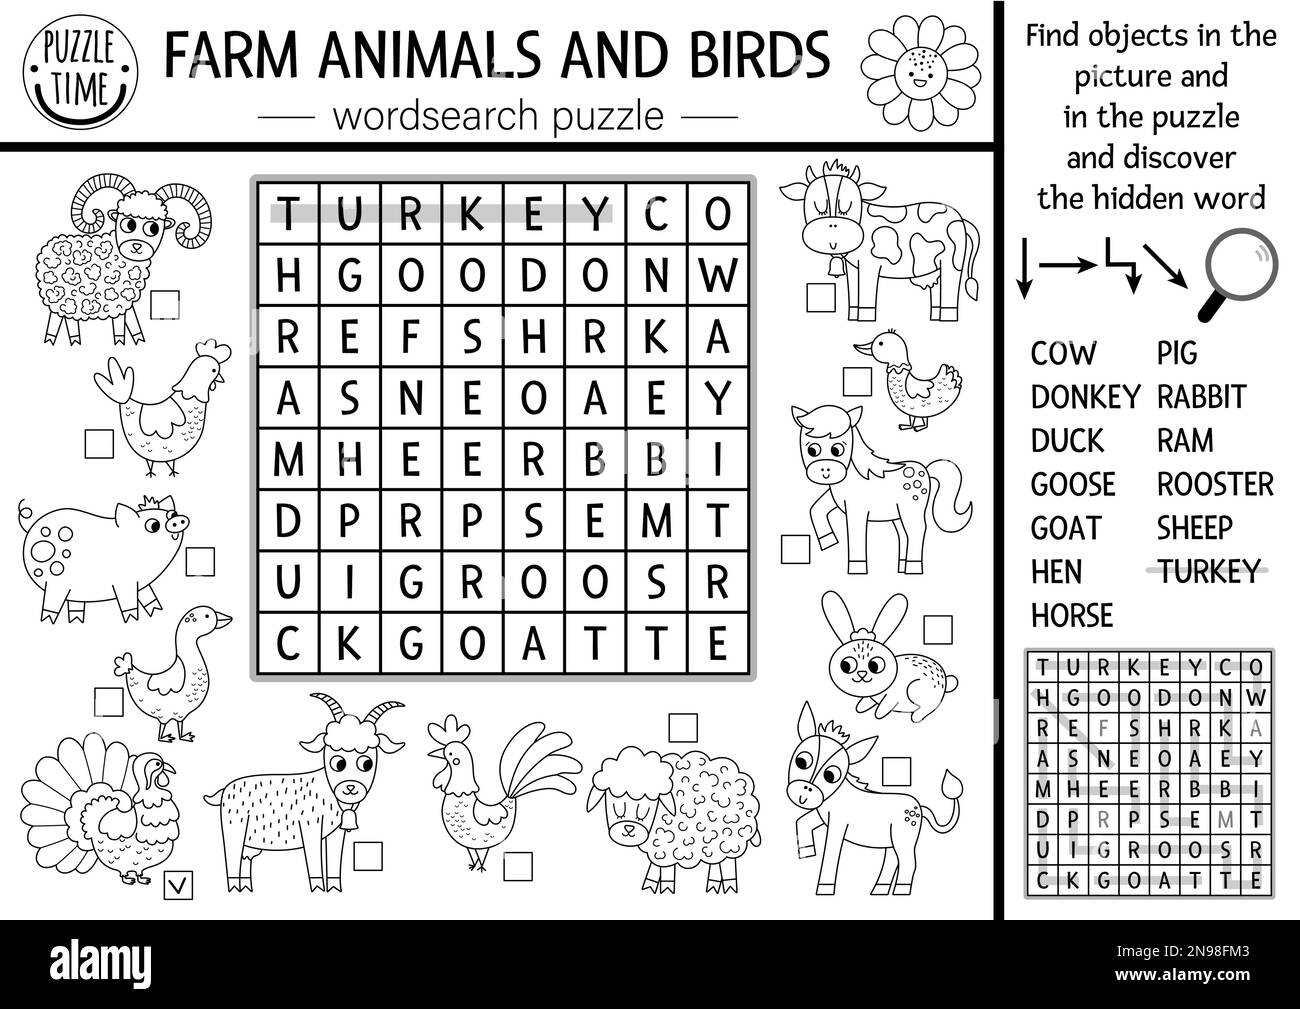 Vektorfarm Tiere und Vögel Schwarzweiß Wortspiele für Kinder. Einfaches Quiz zur Suchzeile für Bauernhöfe. Landesweite Bildungsaktivität mit Stock Vektor